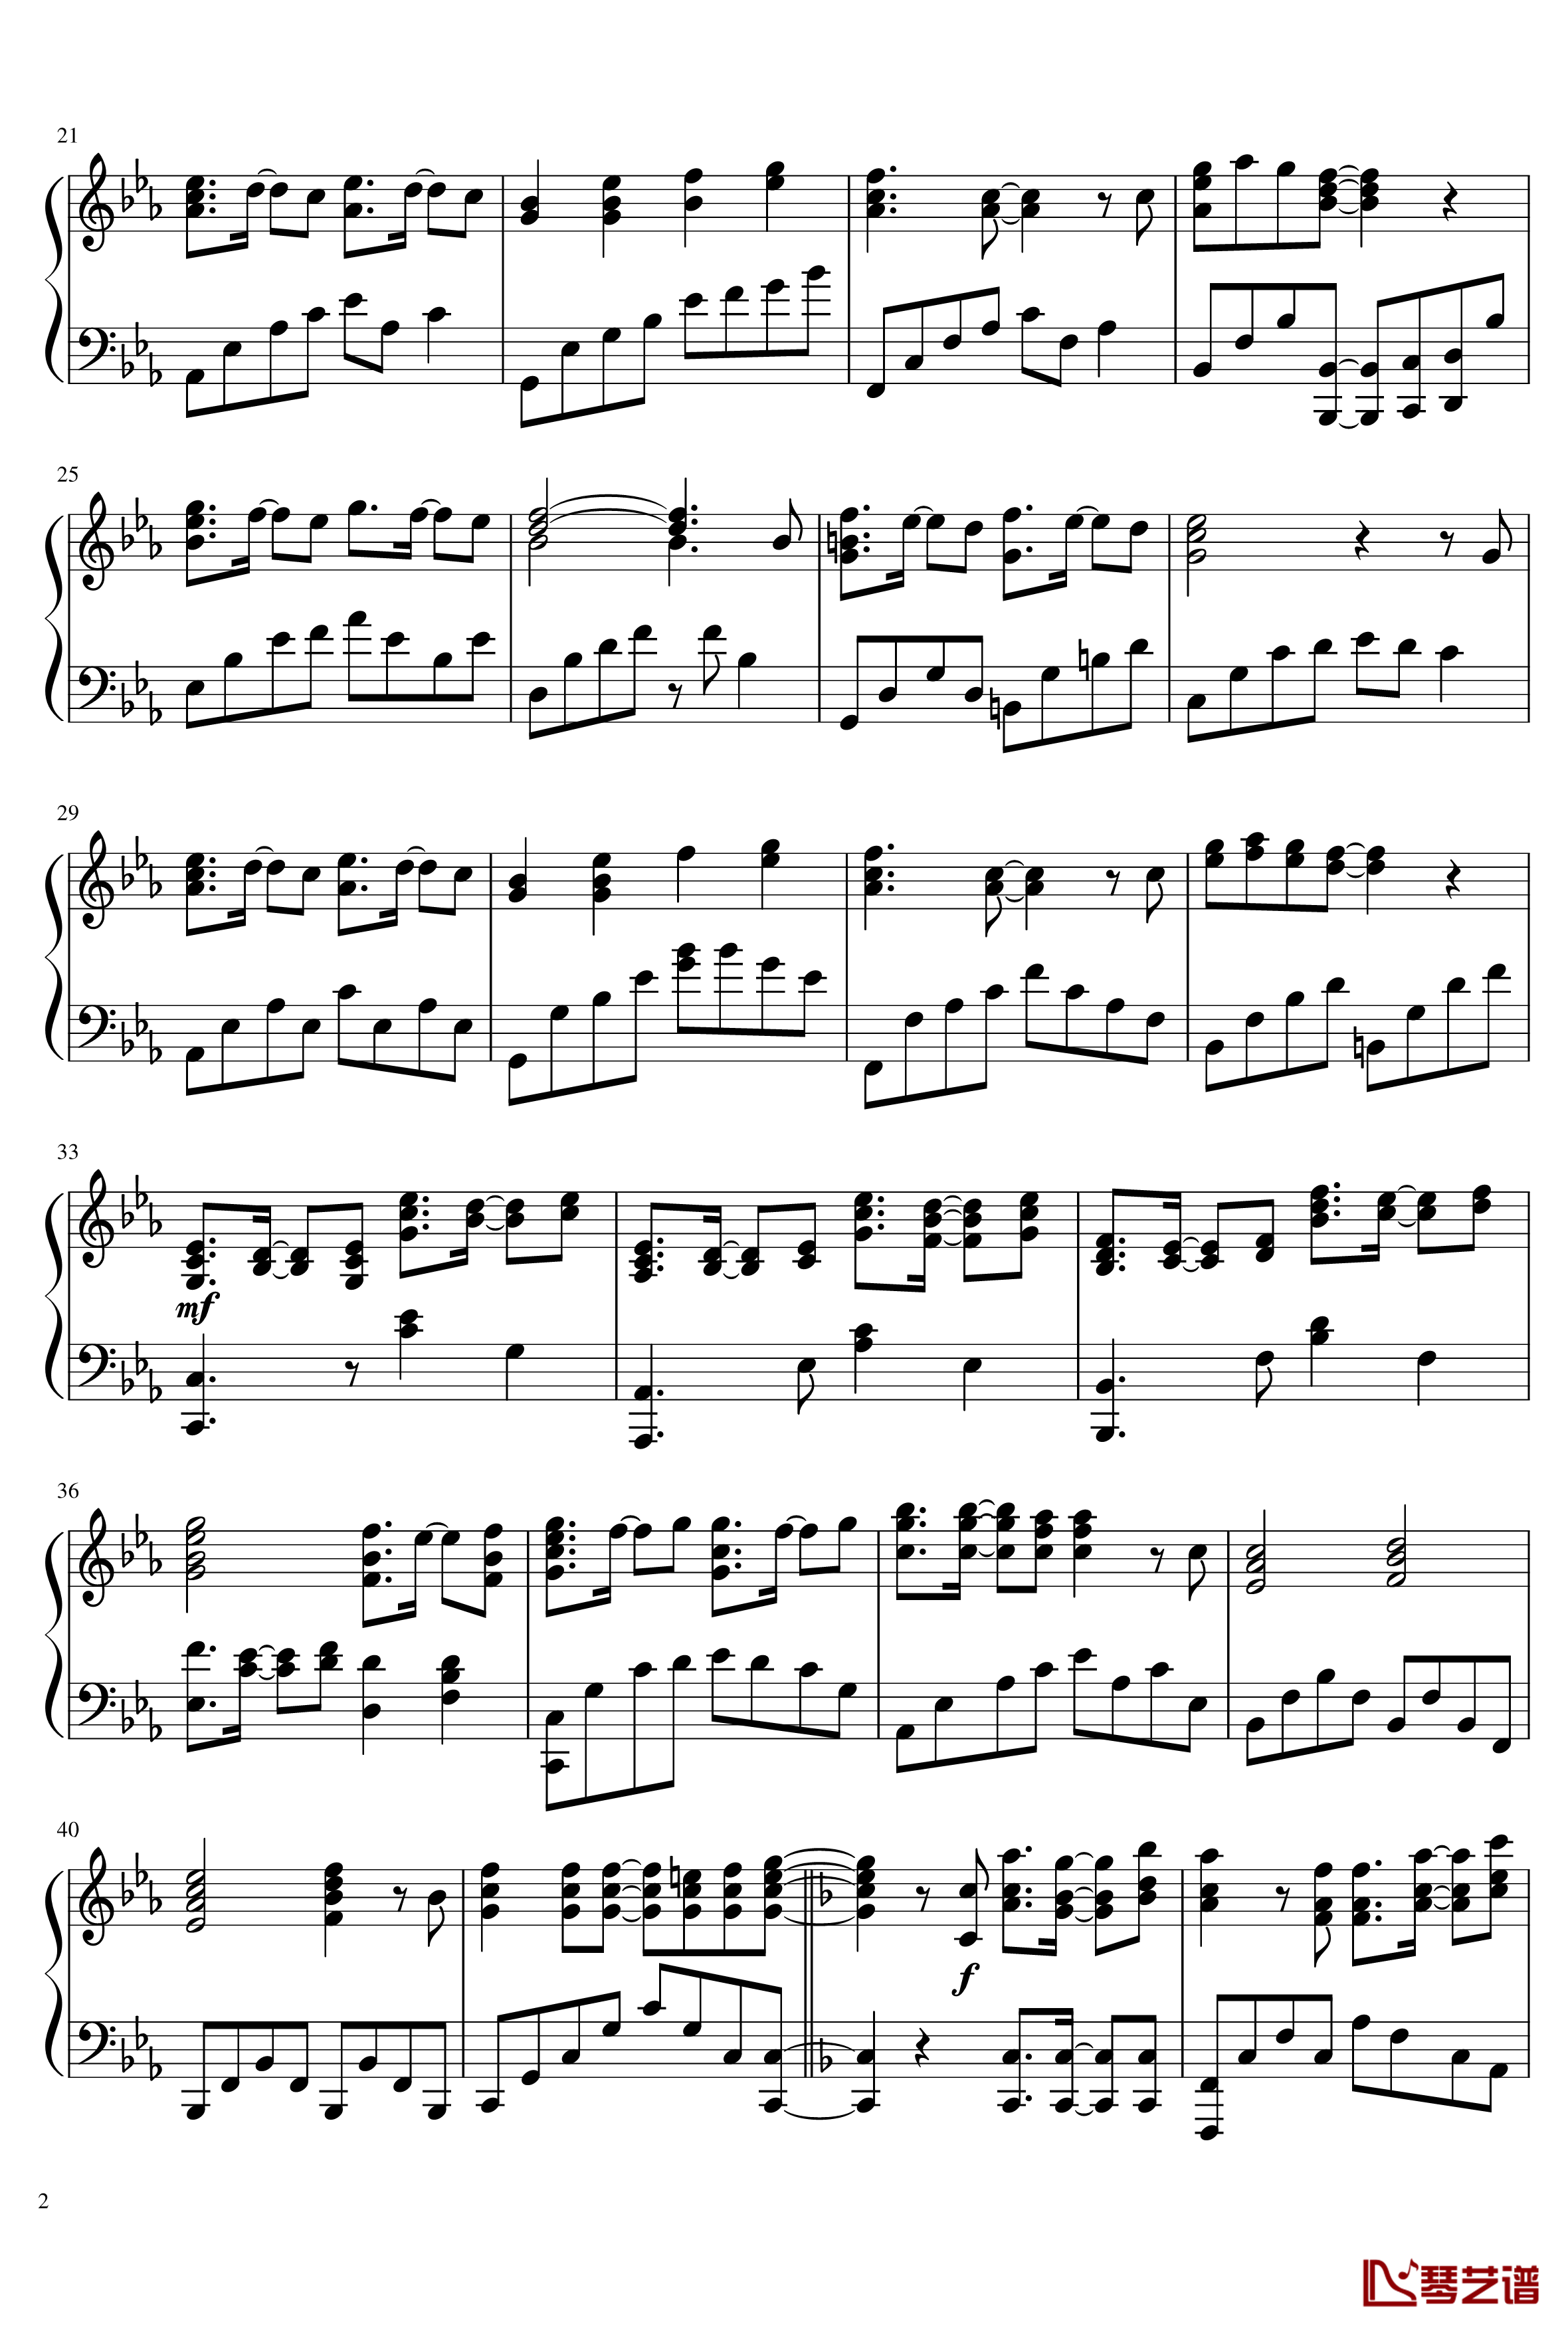 サヨナラの意味钢琴谱-乃木坂462